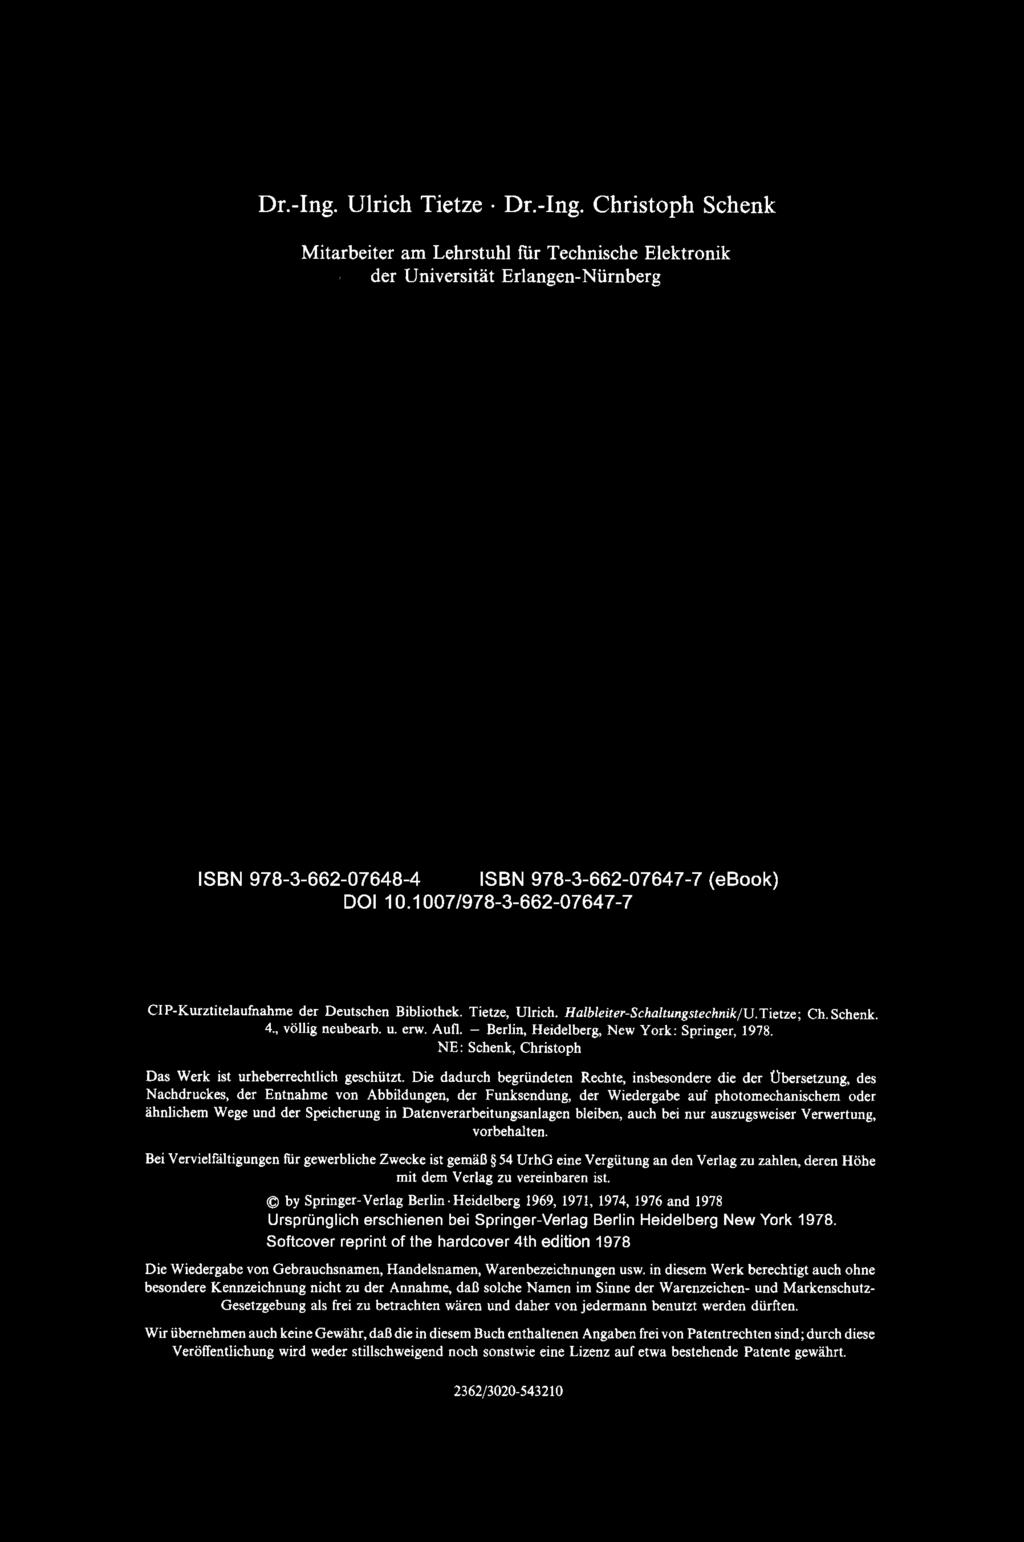 Dr.-Ing. Ulrich Tietze Dr.-Ing. Christoph Schenk Mitarbeiter am Lehrstuhl fur Technische Elektronik cler Universitat Erlangen-Niirnberg ISBN 978-3-662-07648-4 ISBN 978-3-662-07647-7 (ebook) DOI 10.